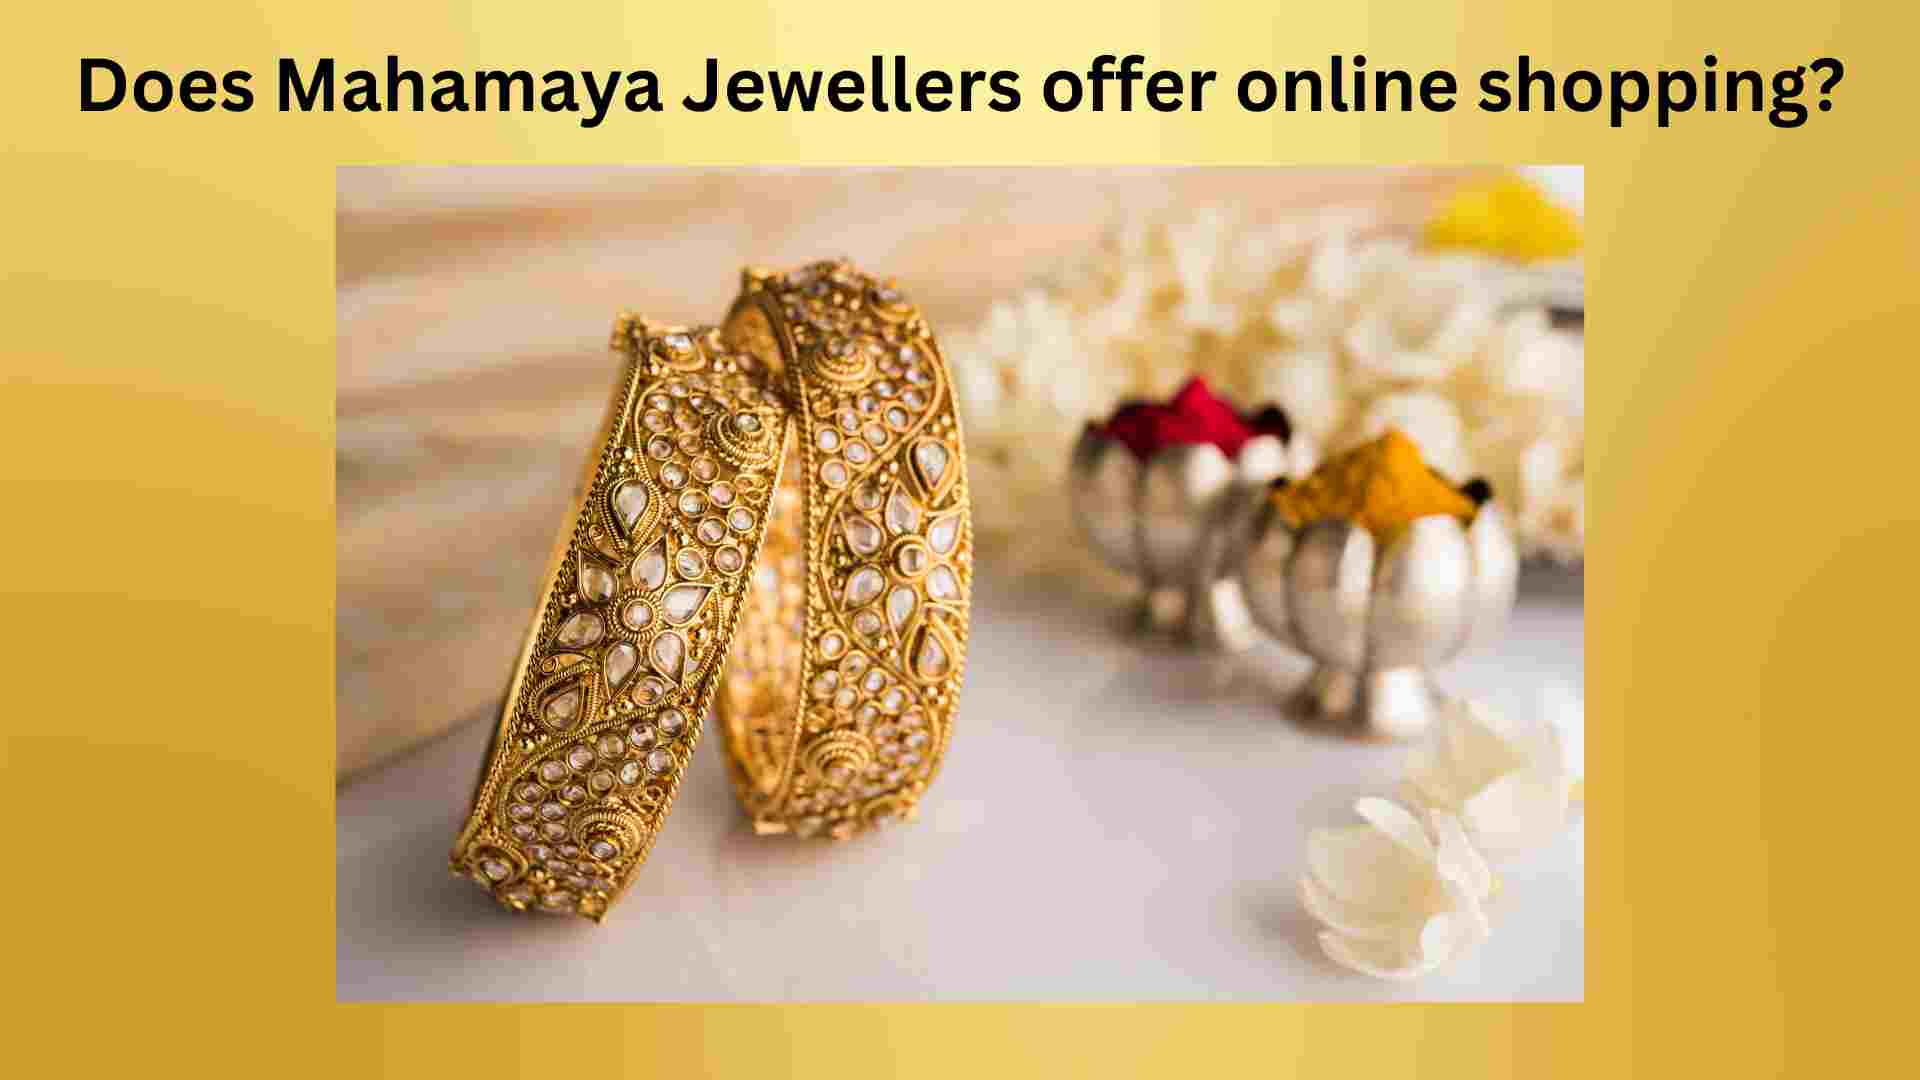 Mahamaya Jewellers